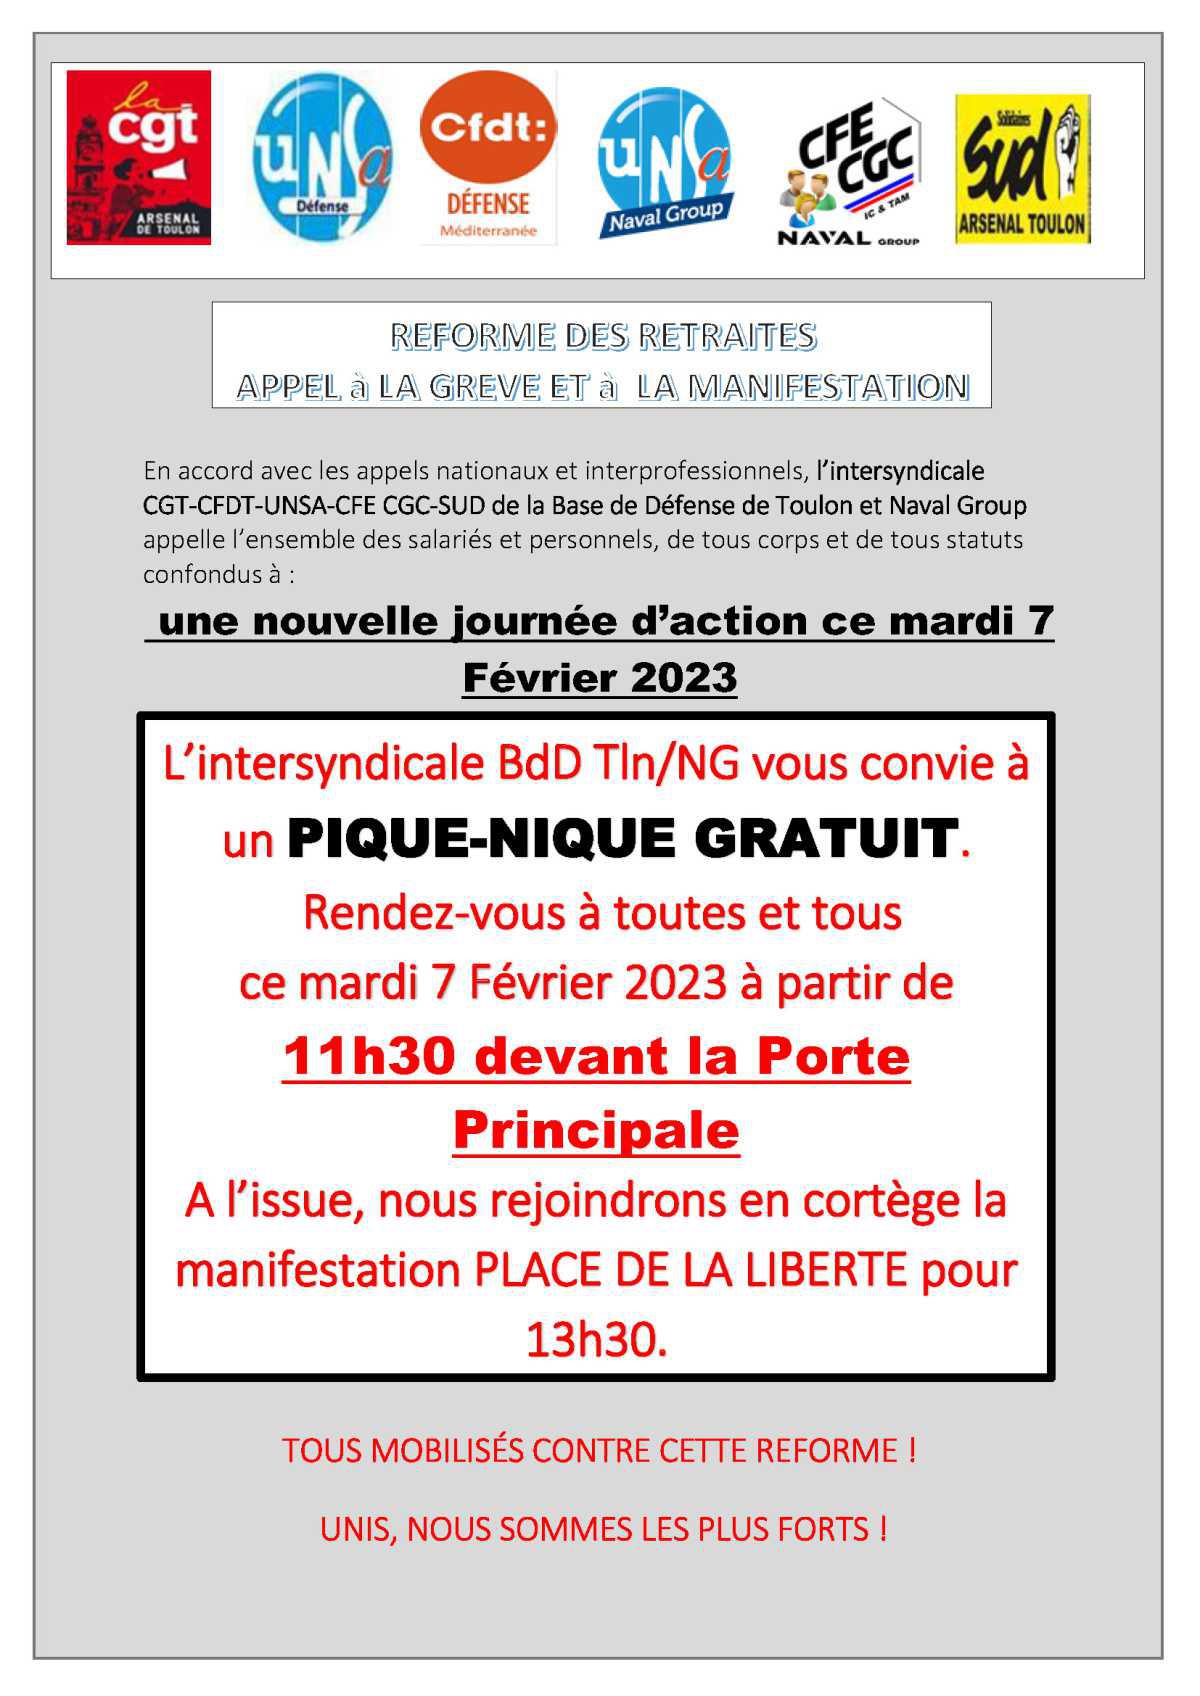 REFORME DES RETRAITES : MANIFESTATION DU 7 FEVRIER à Toulon